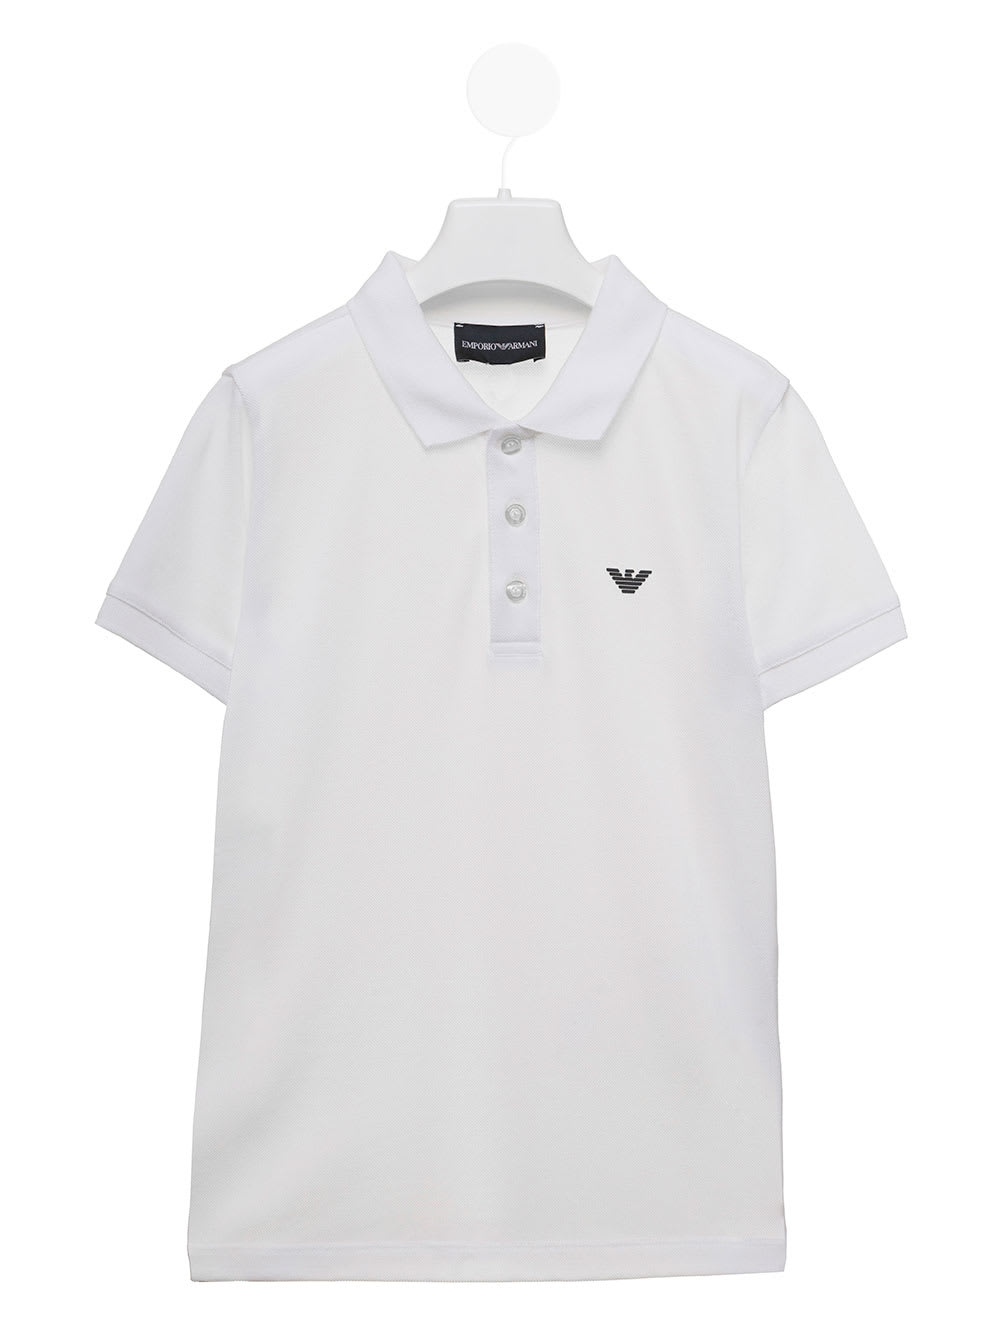 Emporio Armani Kids Boys White Polo Shirt With Logo